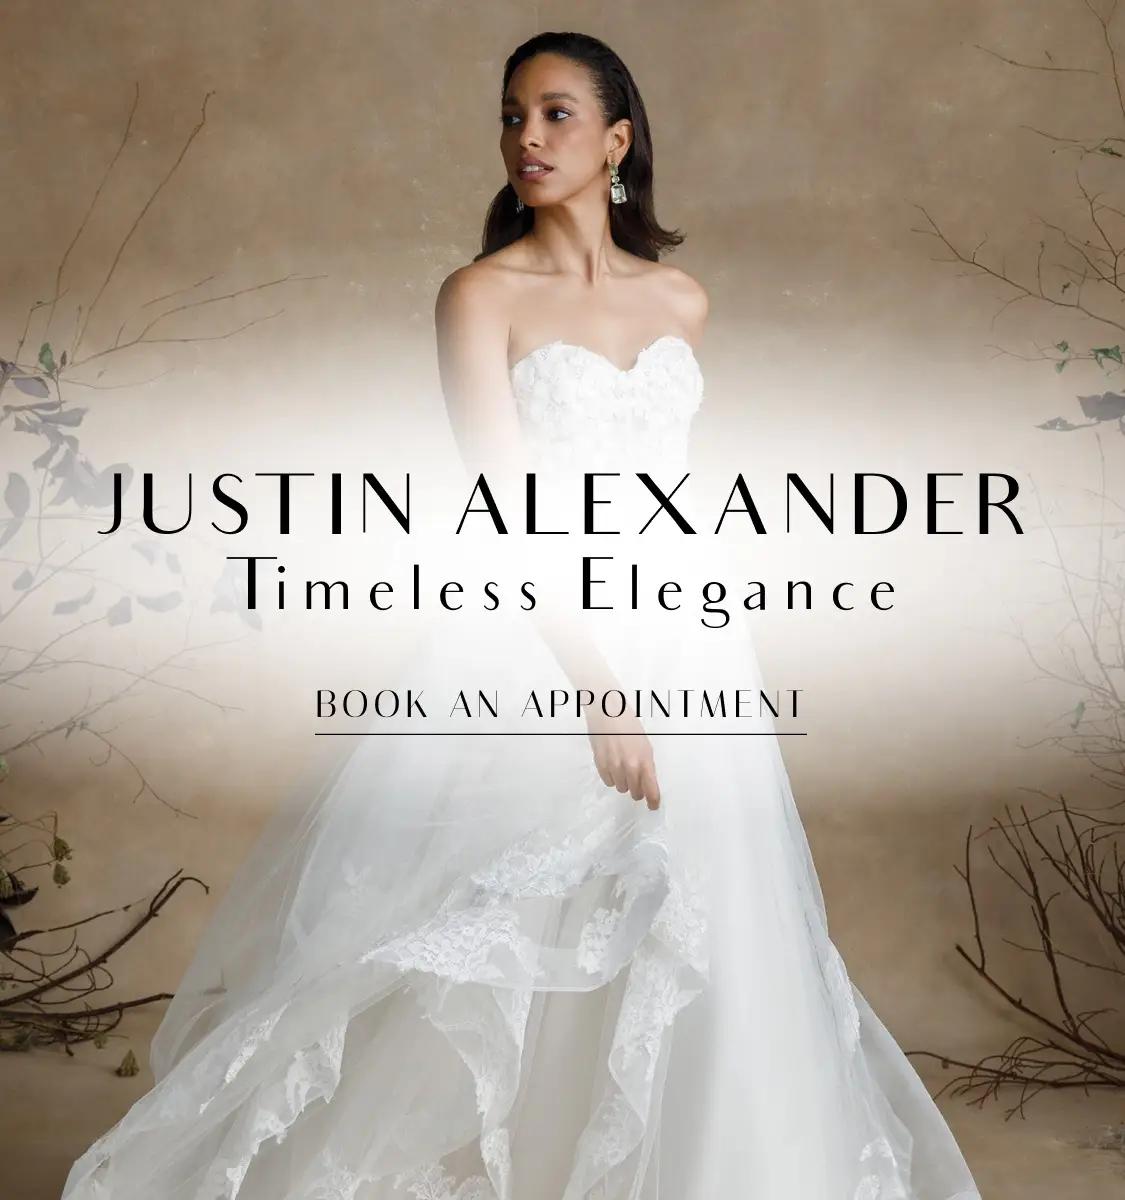 Mobile banner promoting Justin Alexander dresses